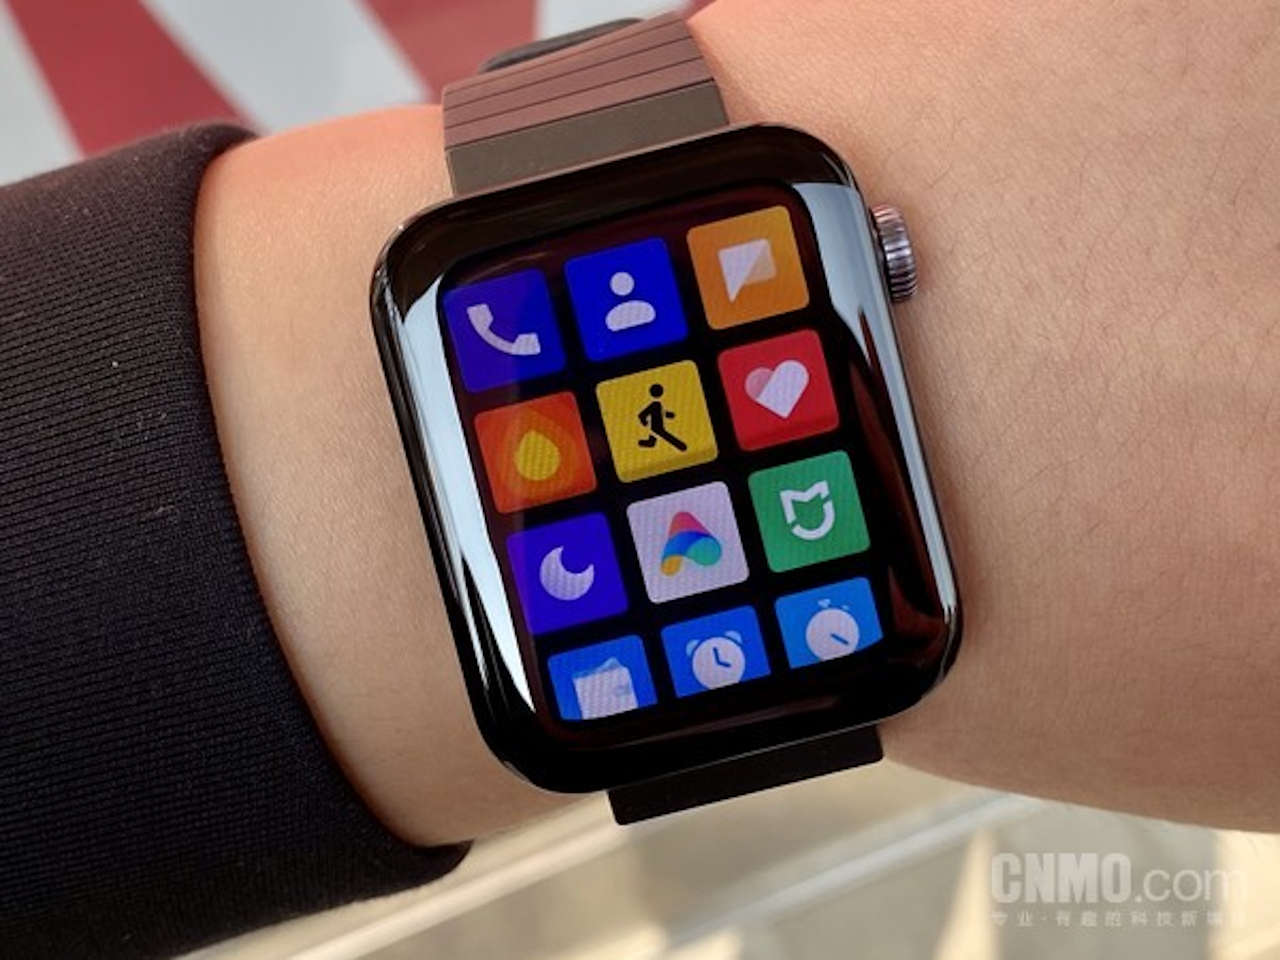 Xiaomi Watch Lite Цена